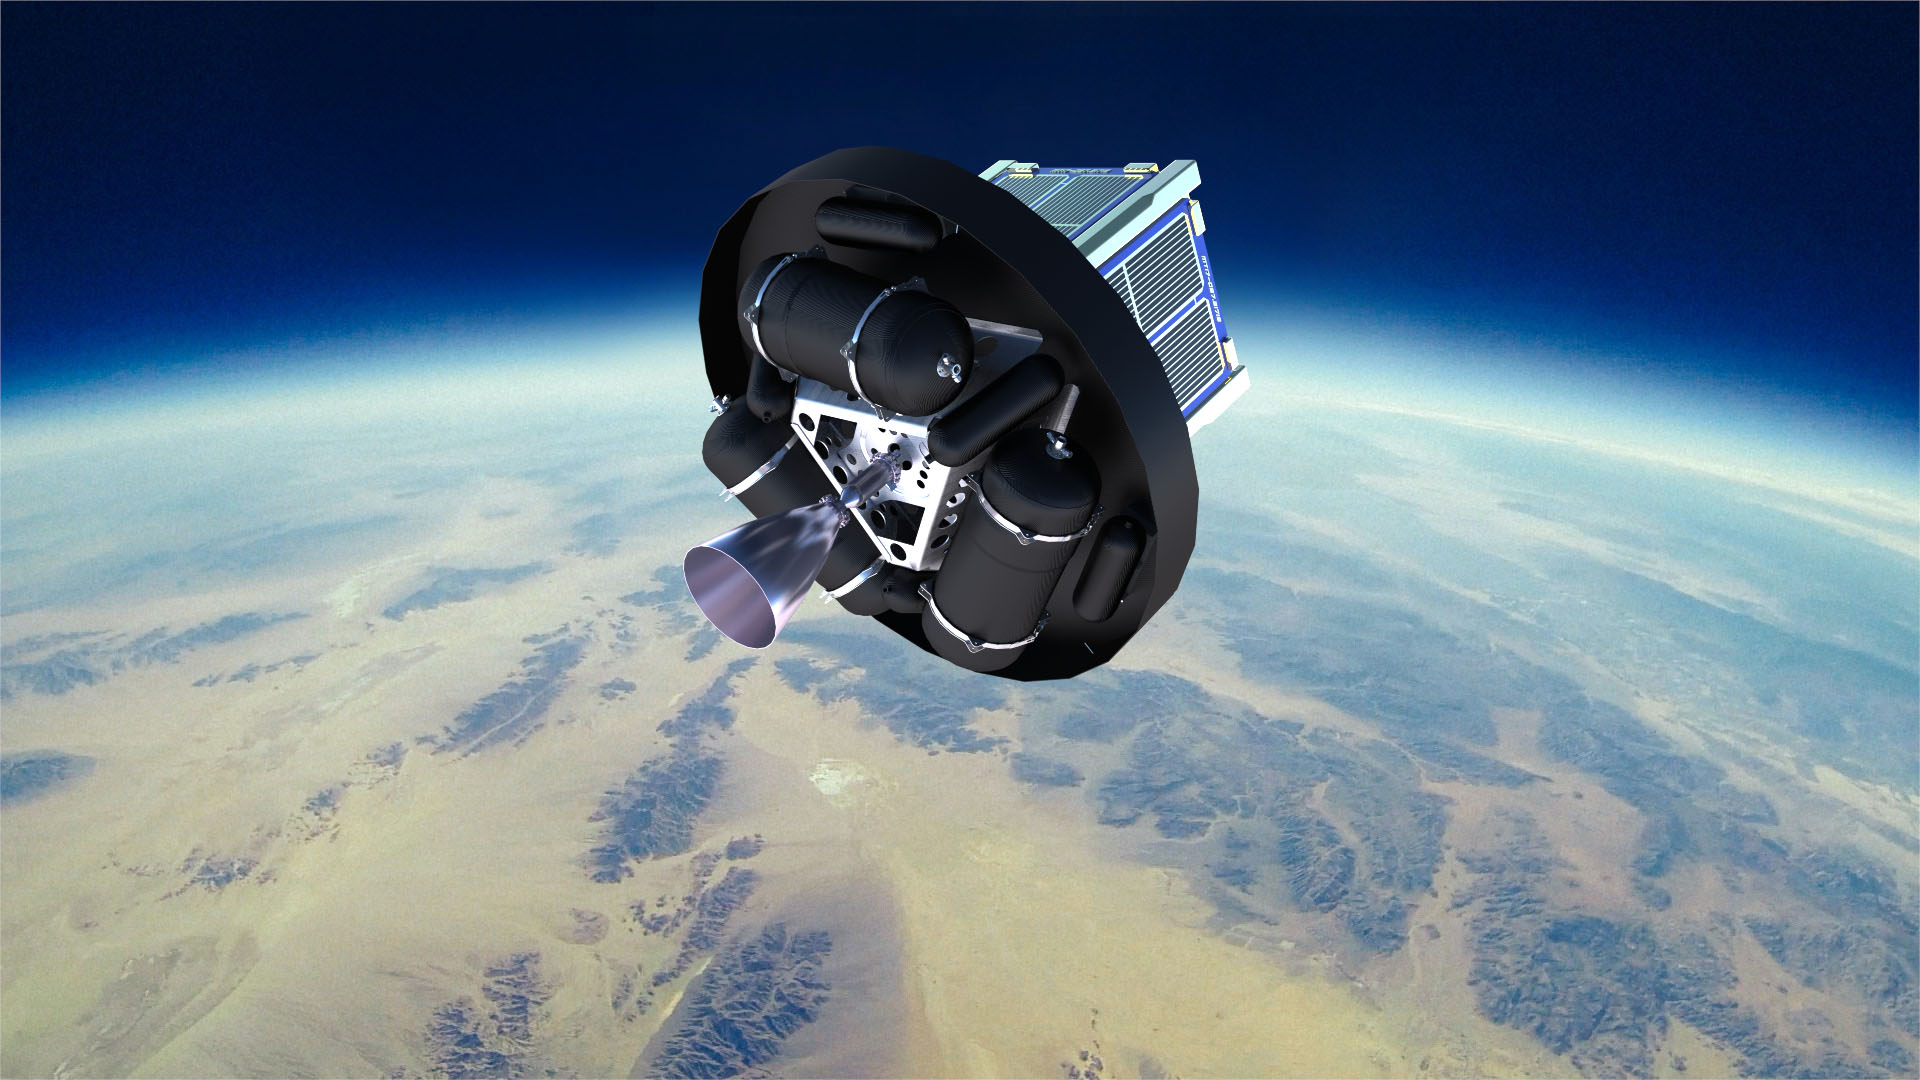 Launch #steamSpace-Cubesat